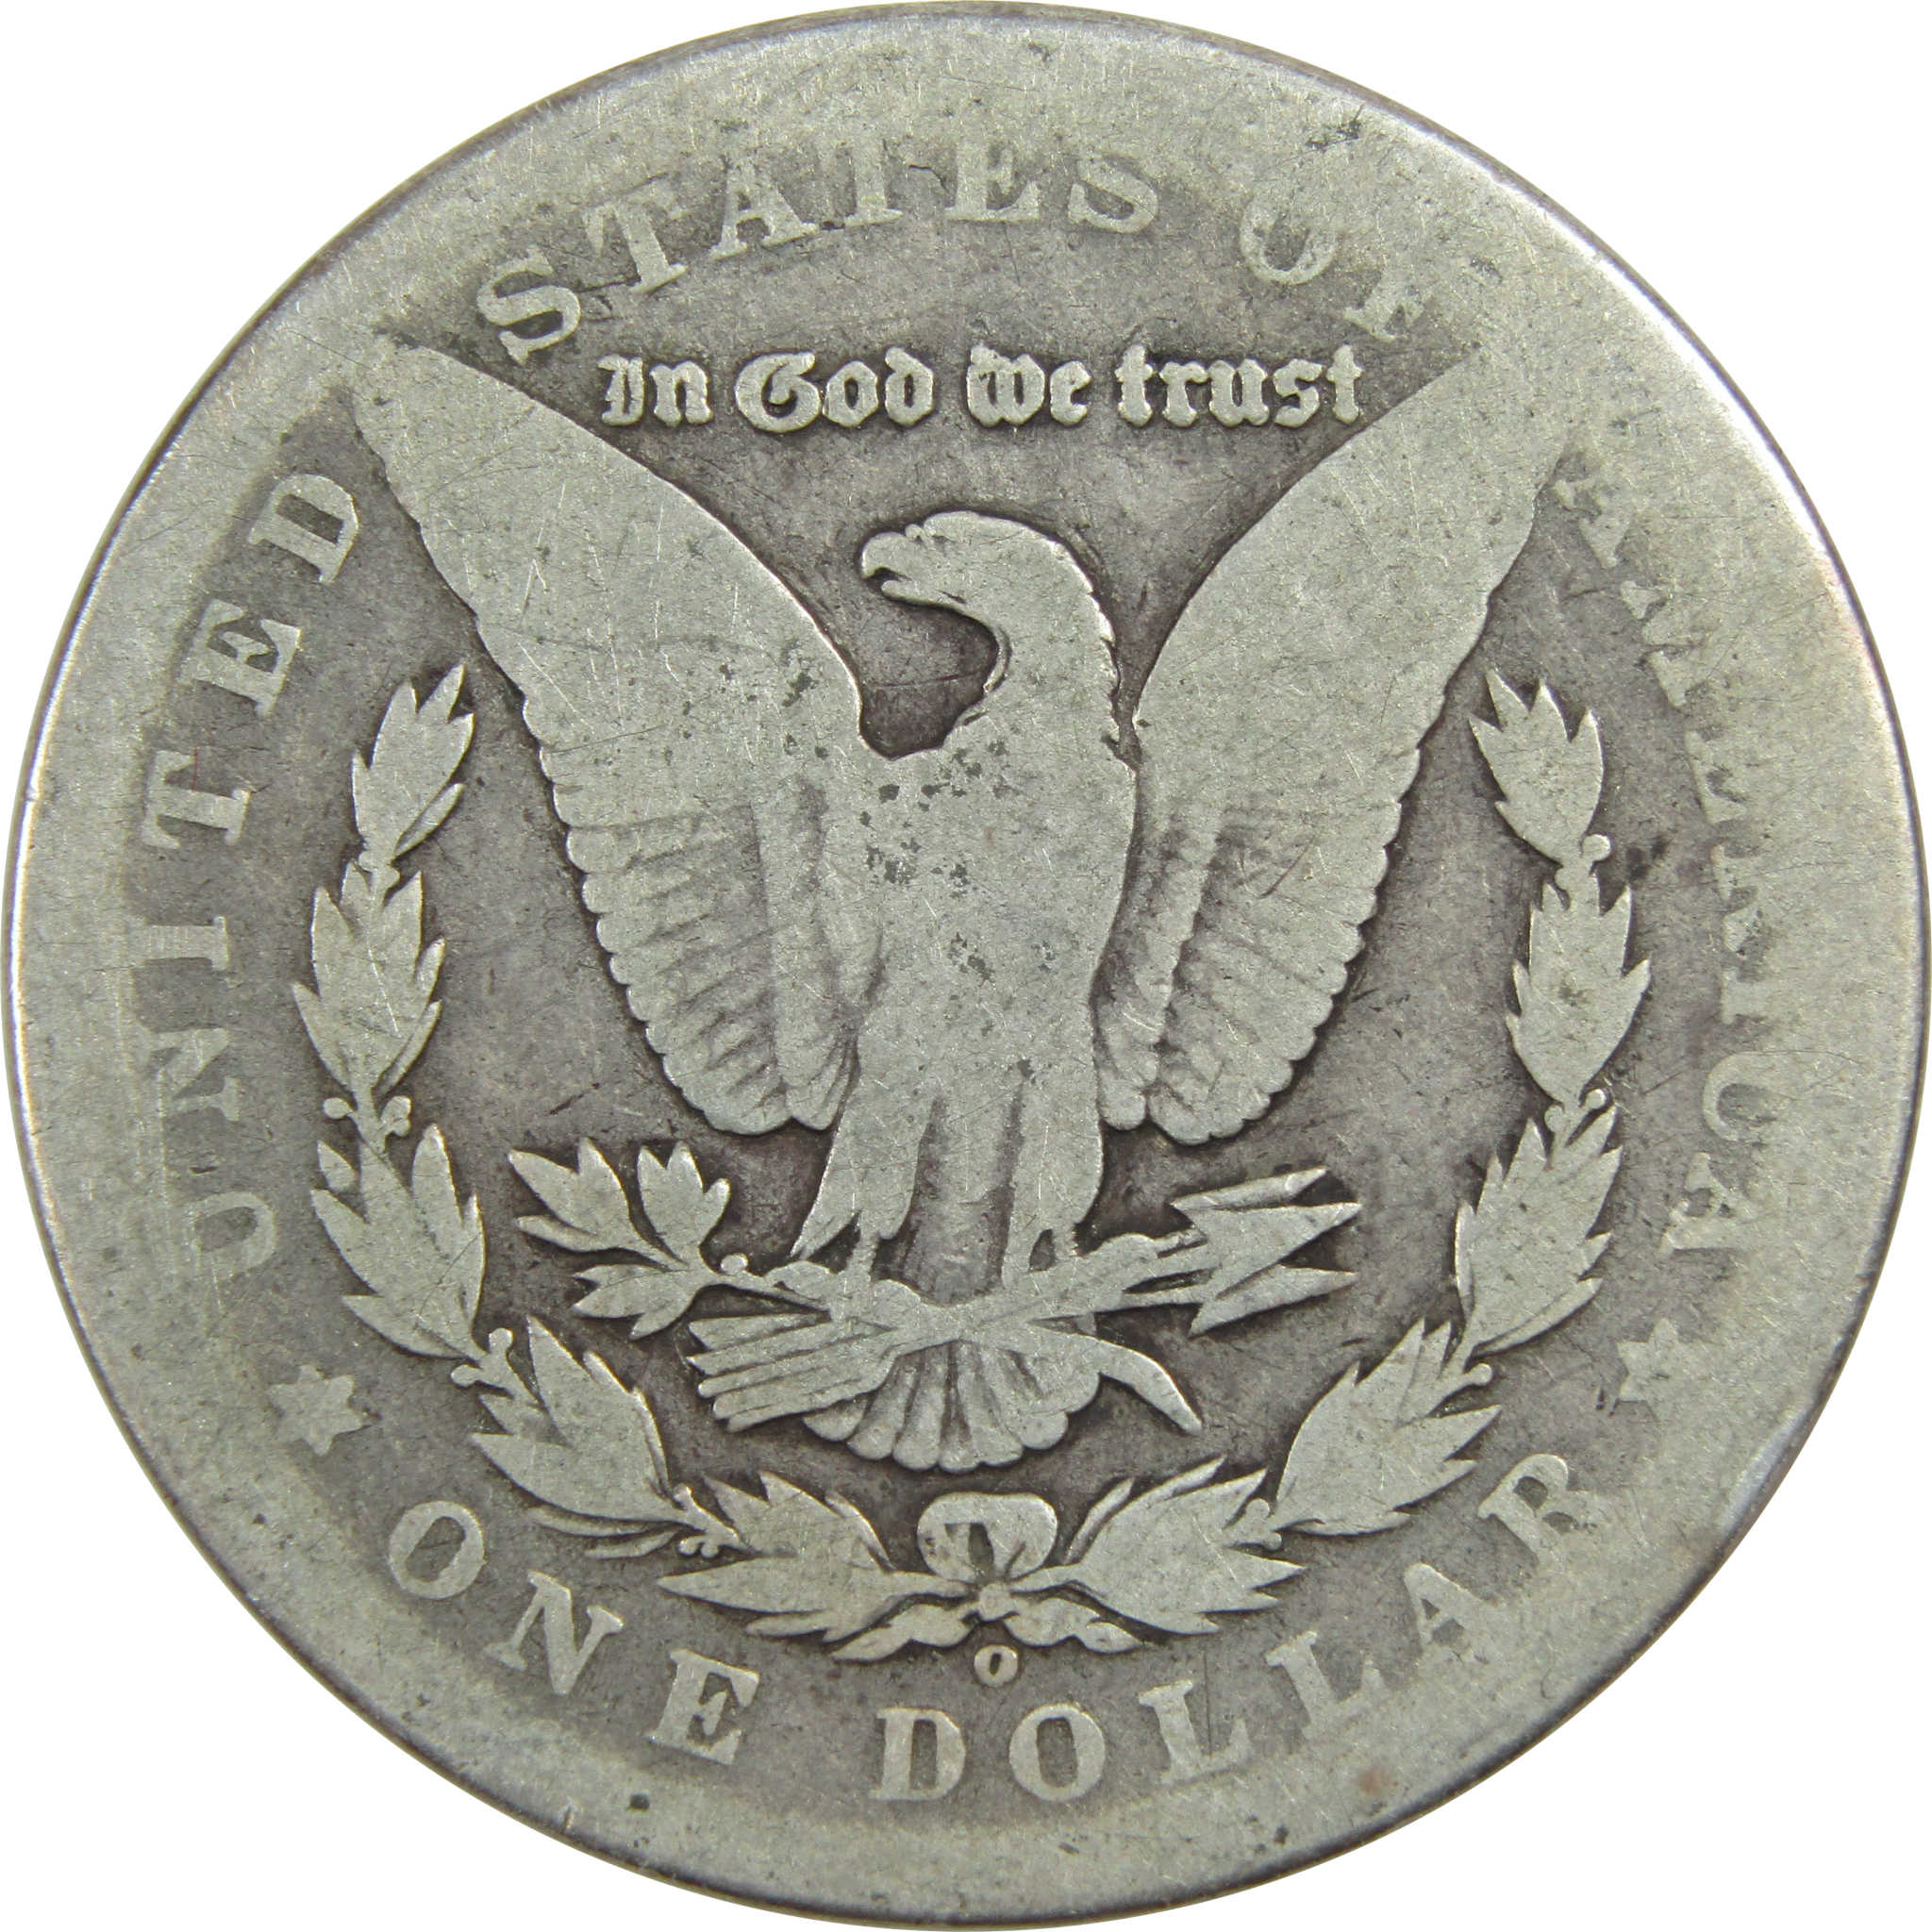 1899 O Micro O Morgan Dollar AG About Good Silver $1 Coin SKU:I13614 - Morgan coin - Morgan silver dollar - Morgan silver dollar for sale - Profile Coins &amp; Collectibles